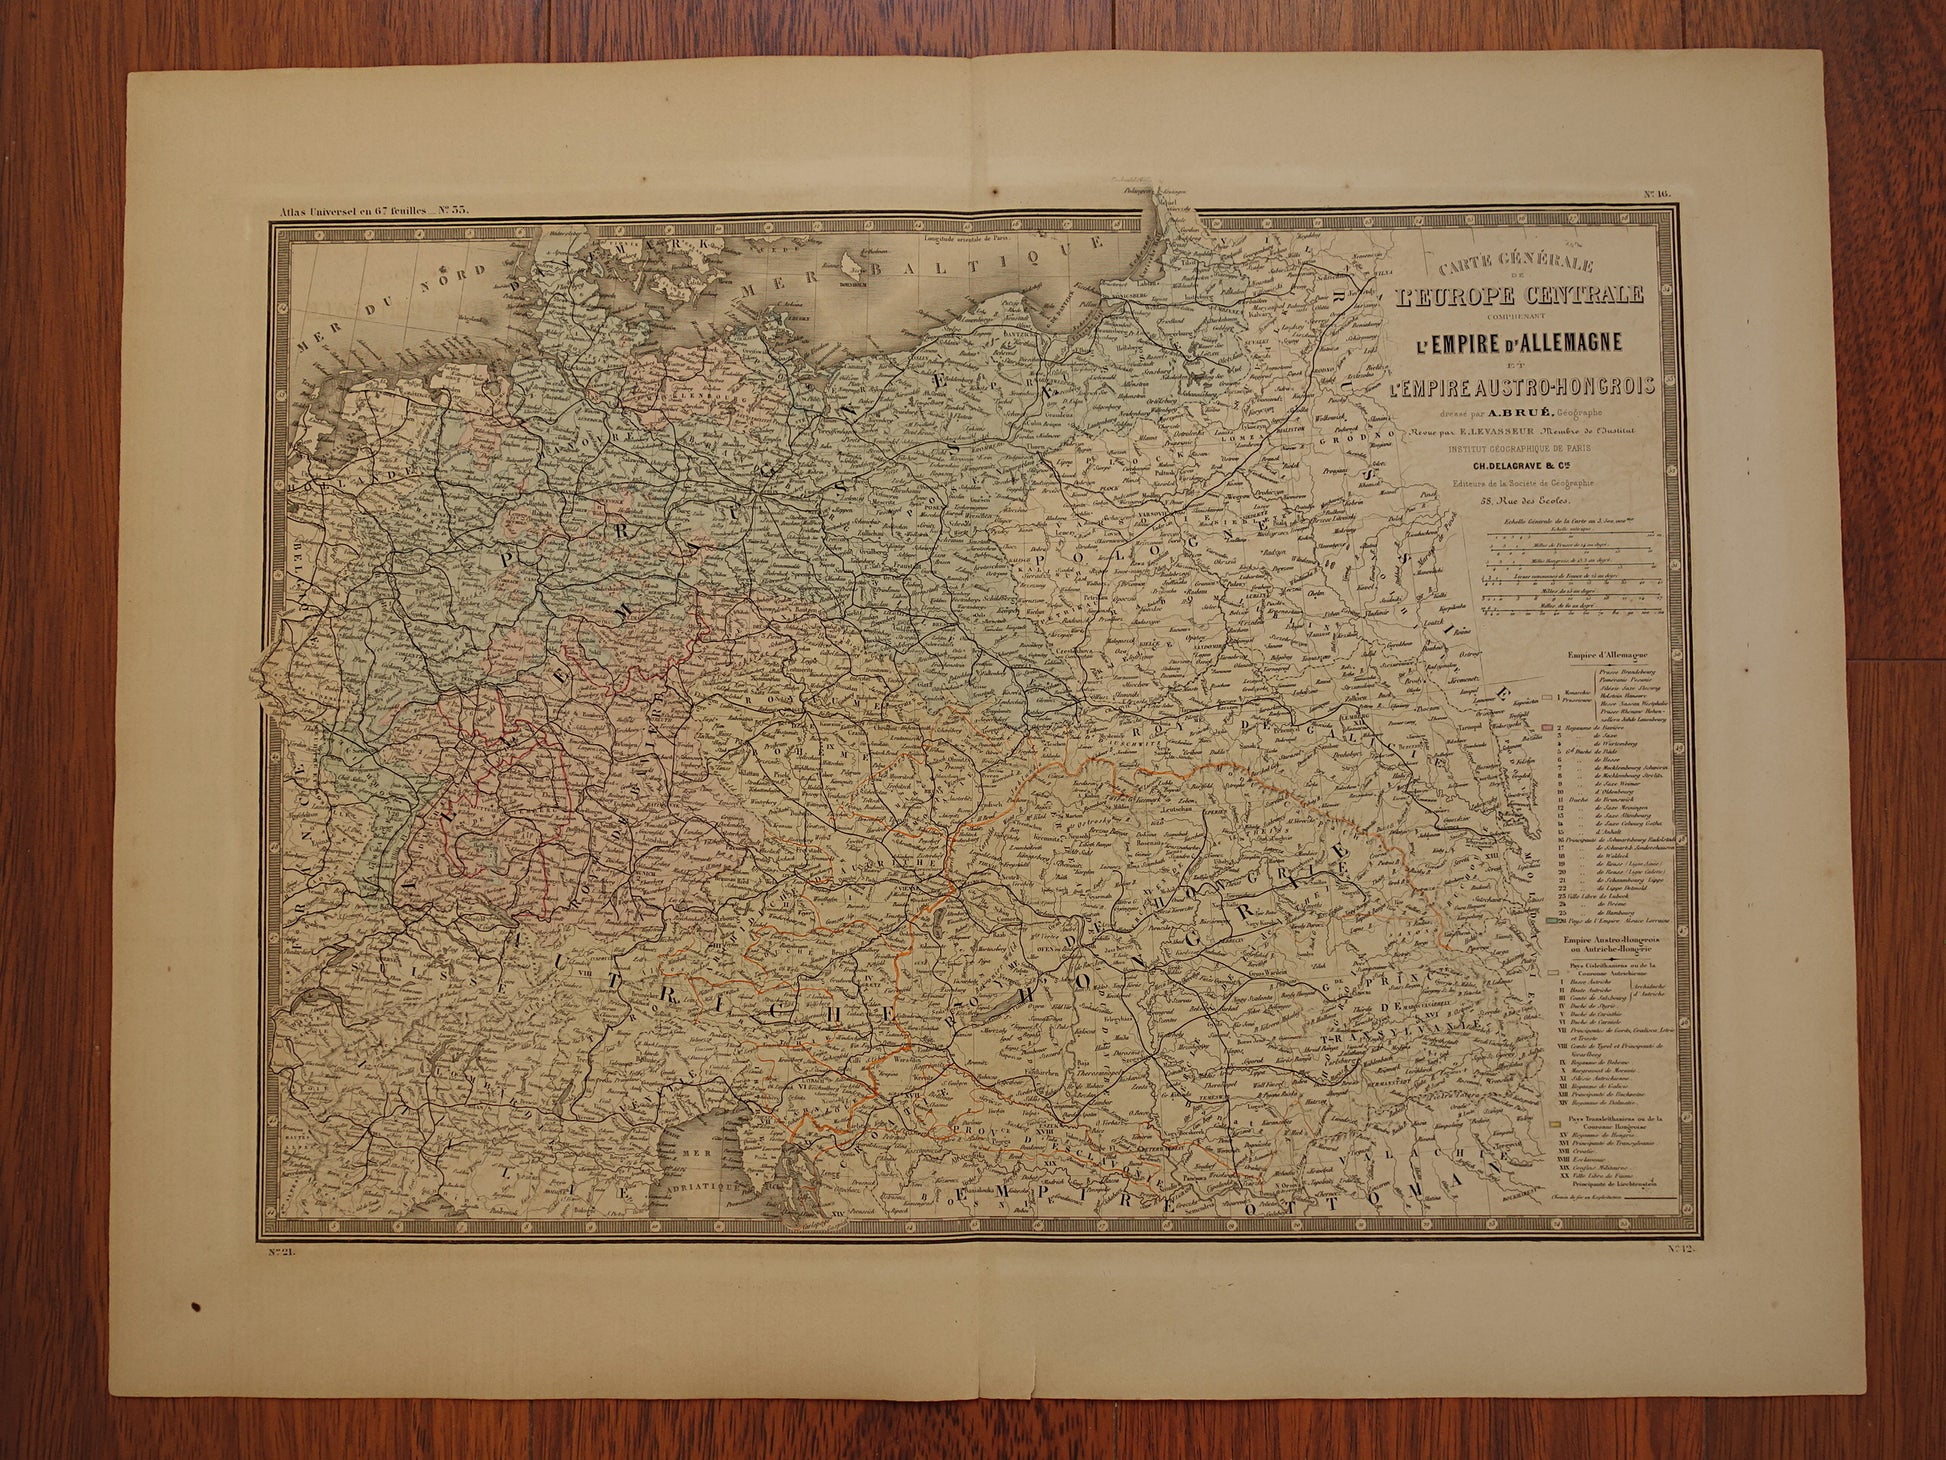 Kaart van Centraal-Europa in 1876 originele antieke handgekleurde oude landkaart poster van Duitsland, Polen Oostenrijk en Tsjechië